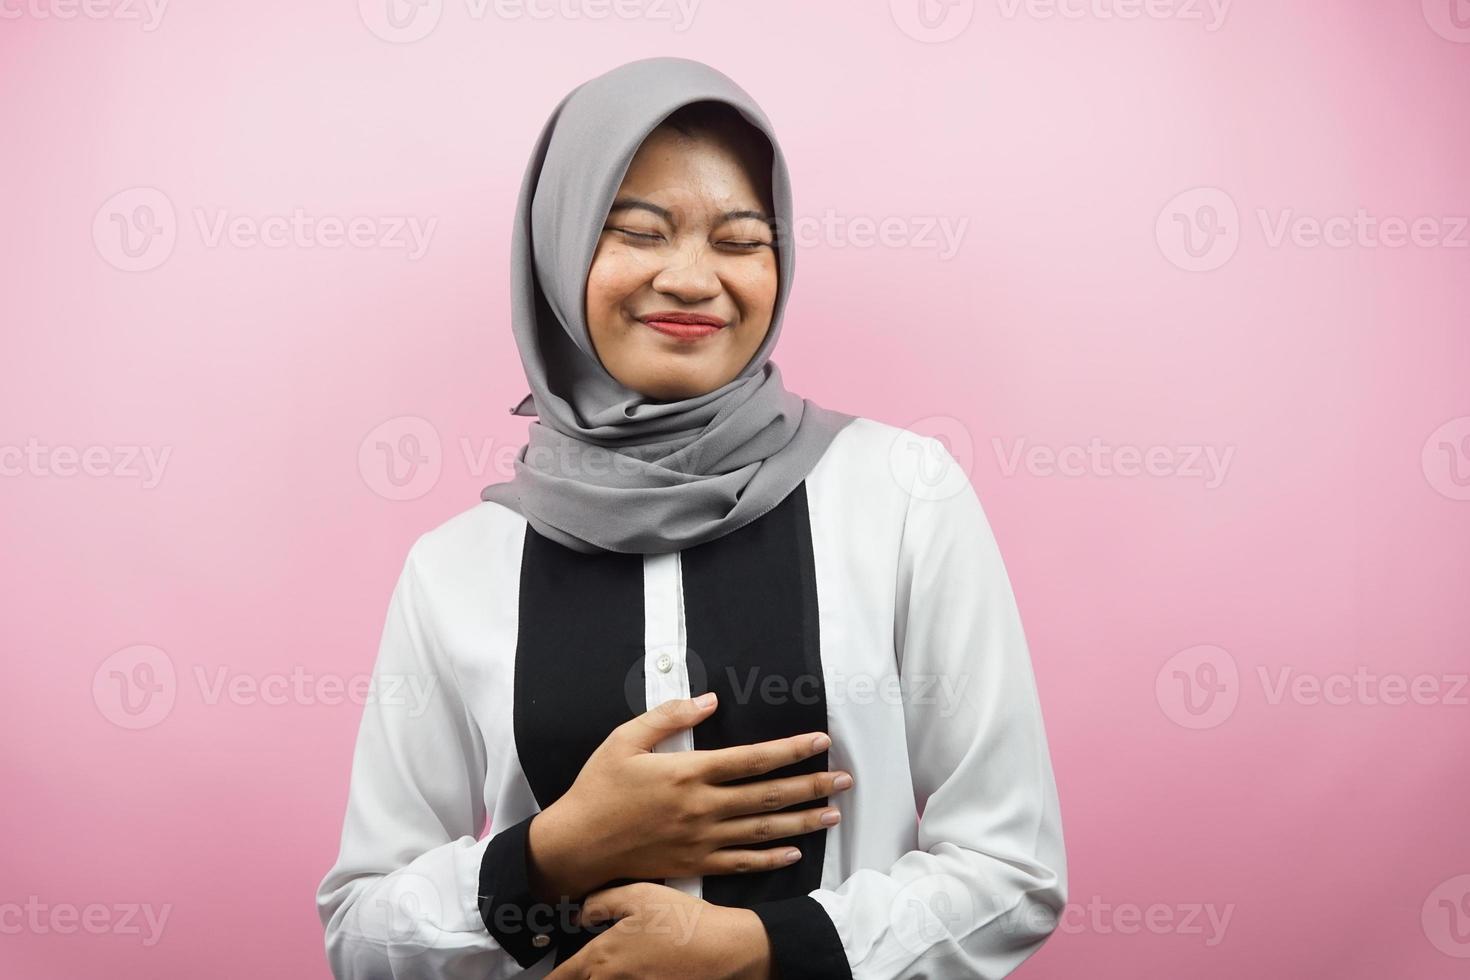 schöne junge asiatische muslimische frau, die fröhlich lächelt, mit den händen, die bauch halten, voller bauch, einzeln auf rosa hintergrund foto